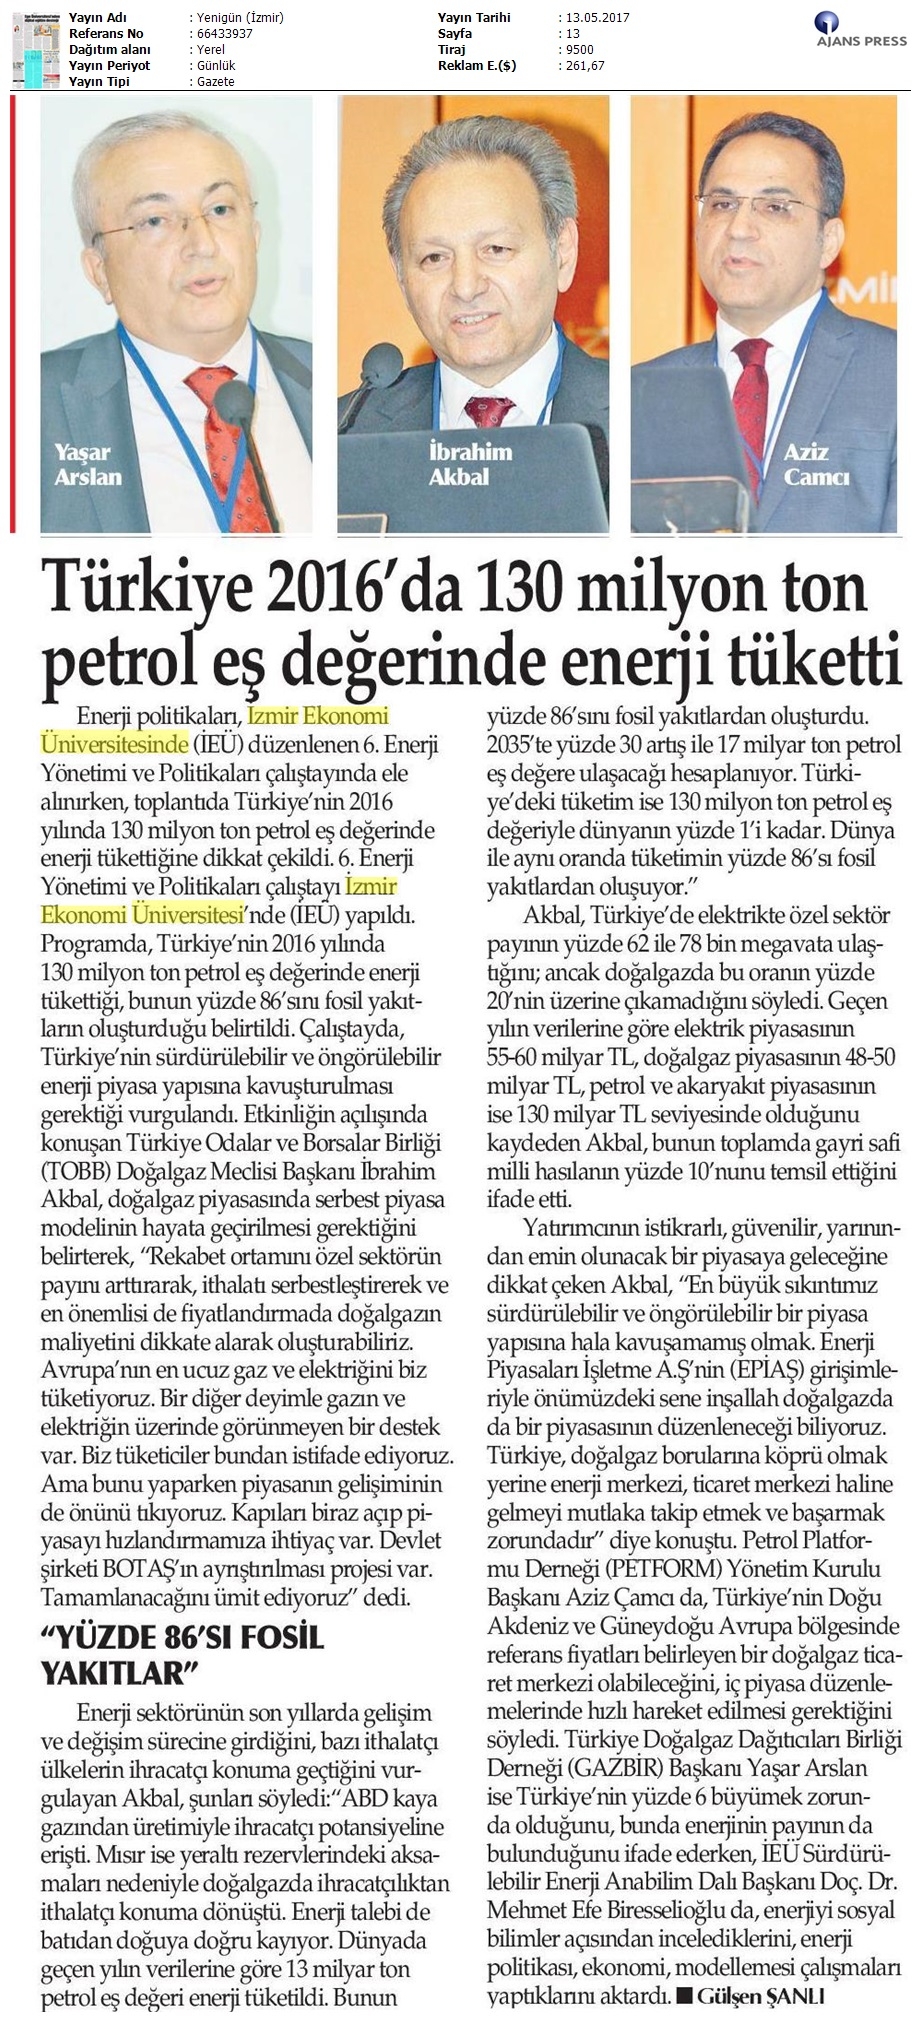 Türkiye 130 Milyon ton petrole eş değer enerji tüketti